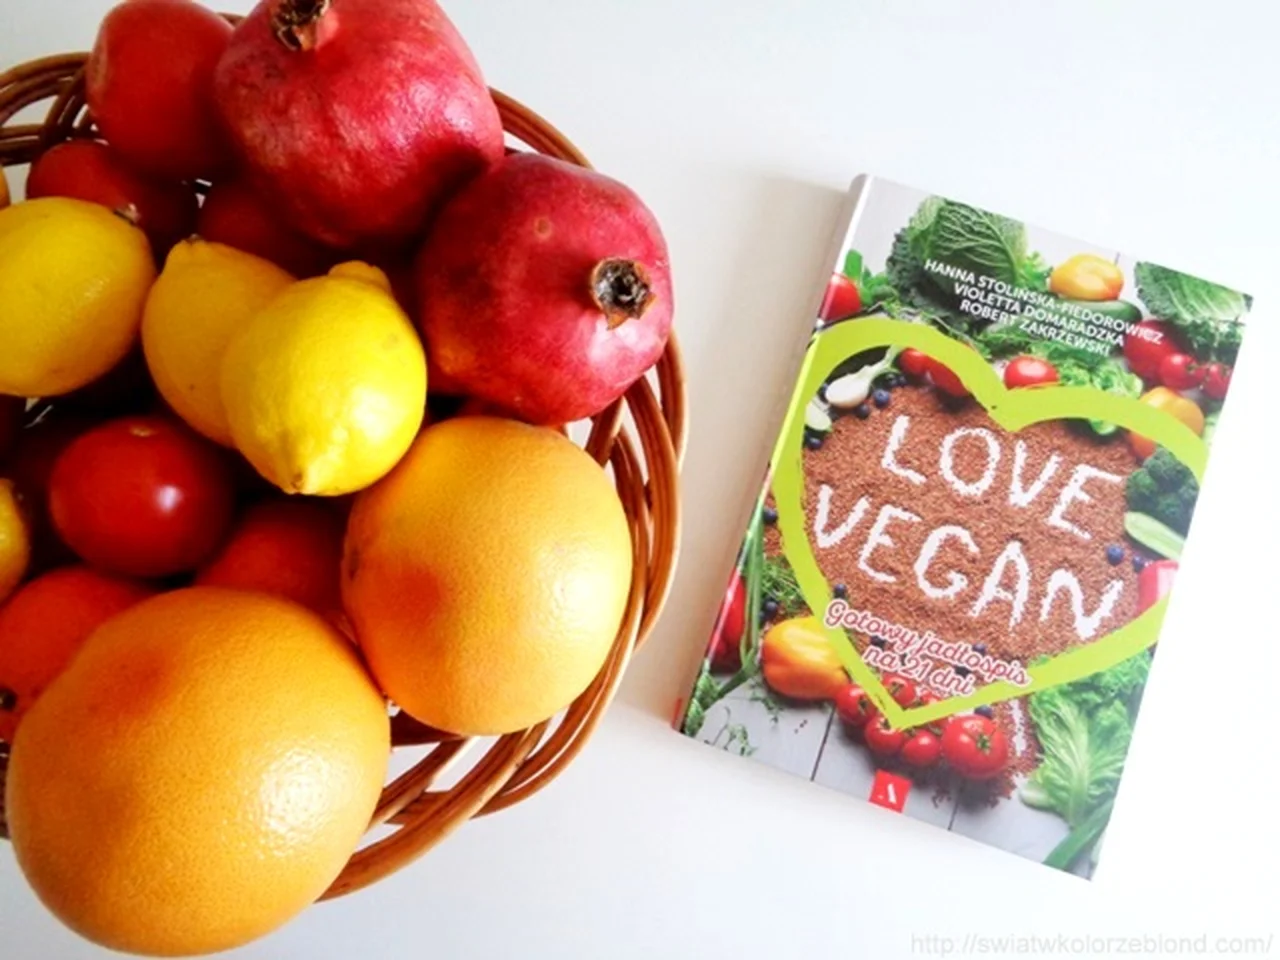 " Love Vegan. Gotowy jadłospis na 21 dni" - recenzja